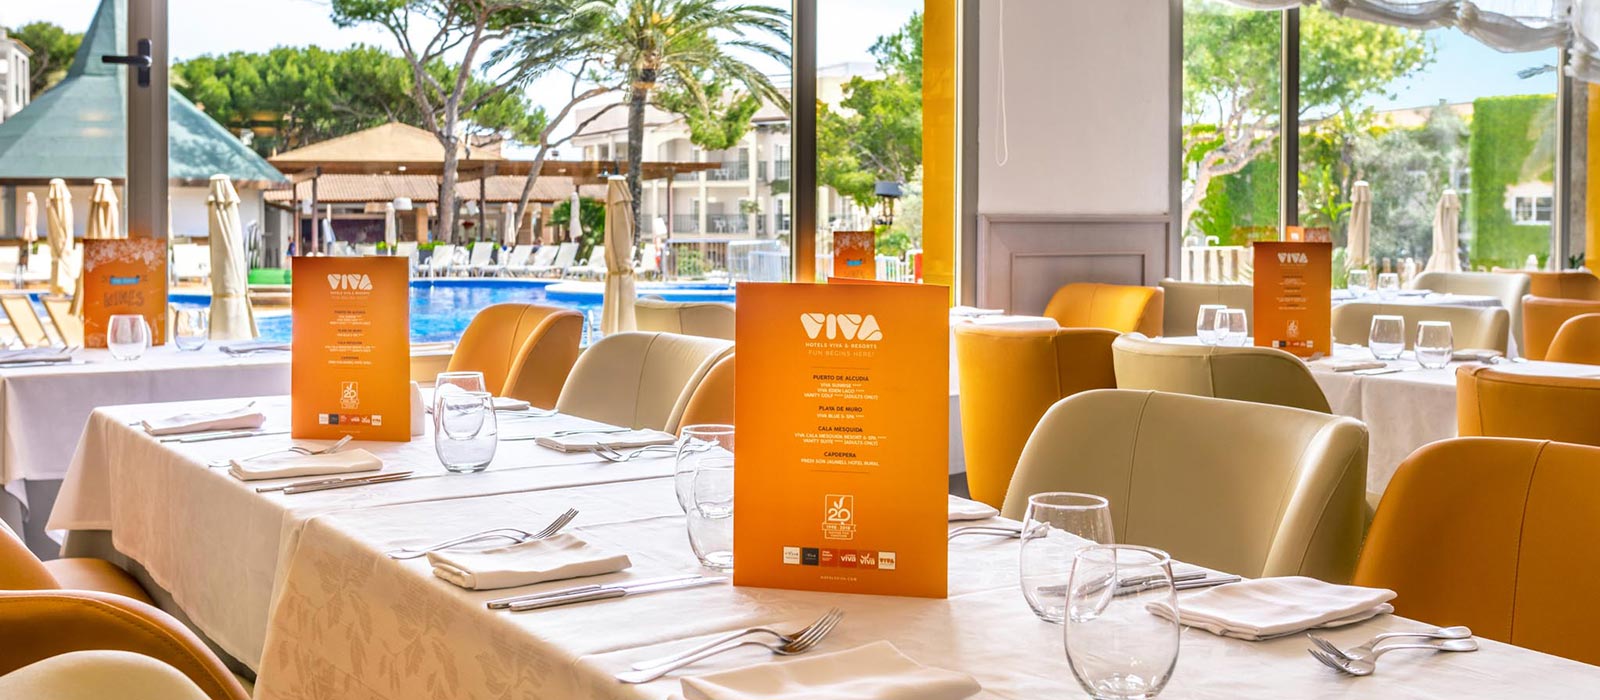 201804-VIVA-CM-Resort-Caprice-Restaurant2